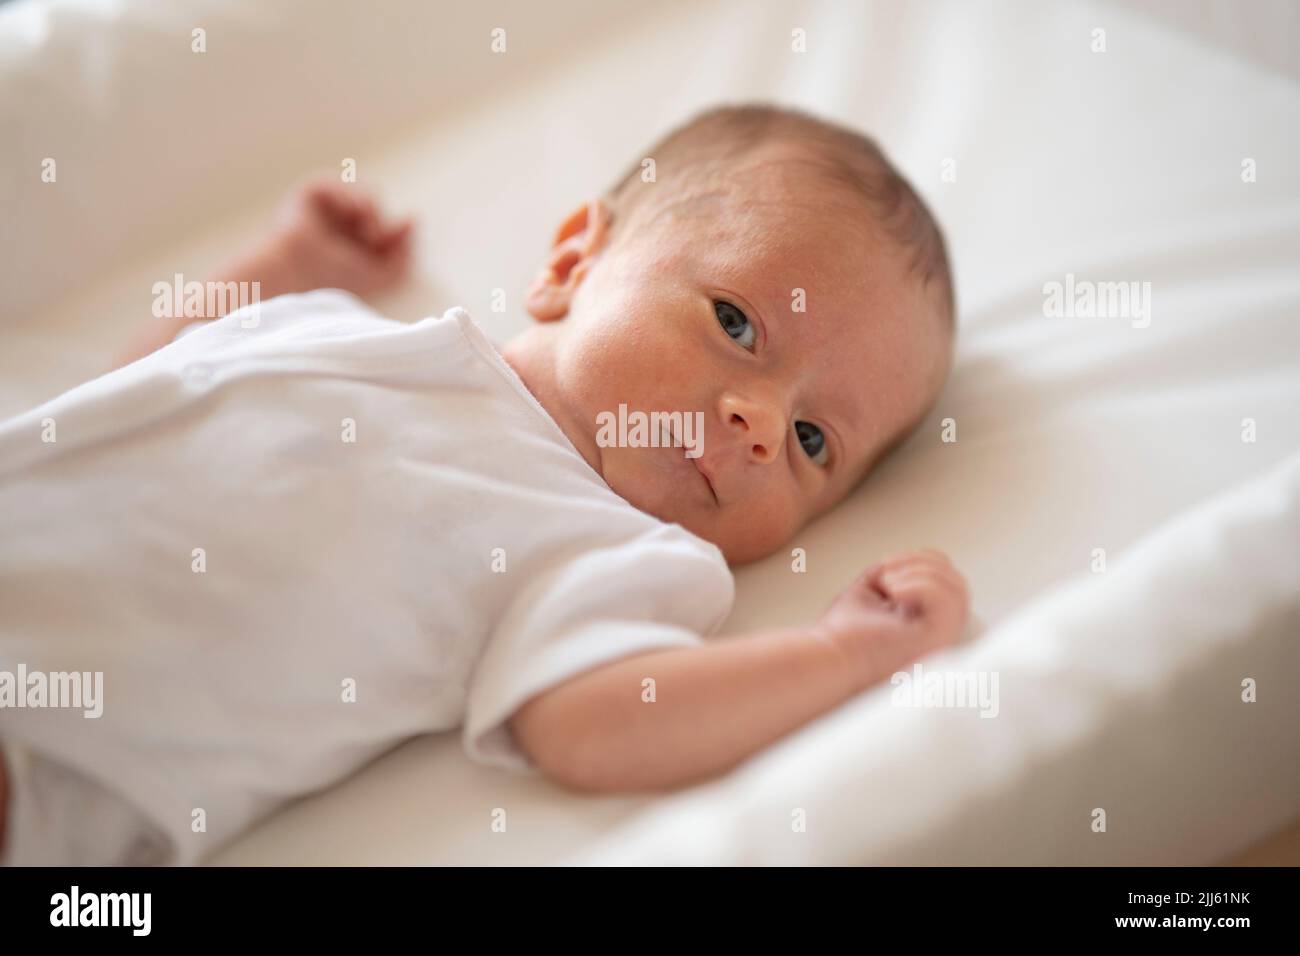 Cute baby looking at camera Stock Photo